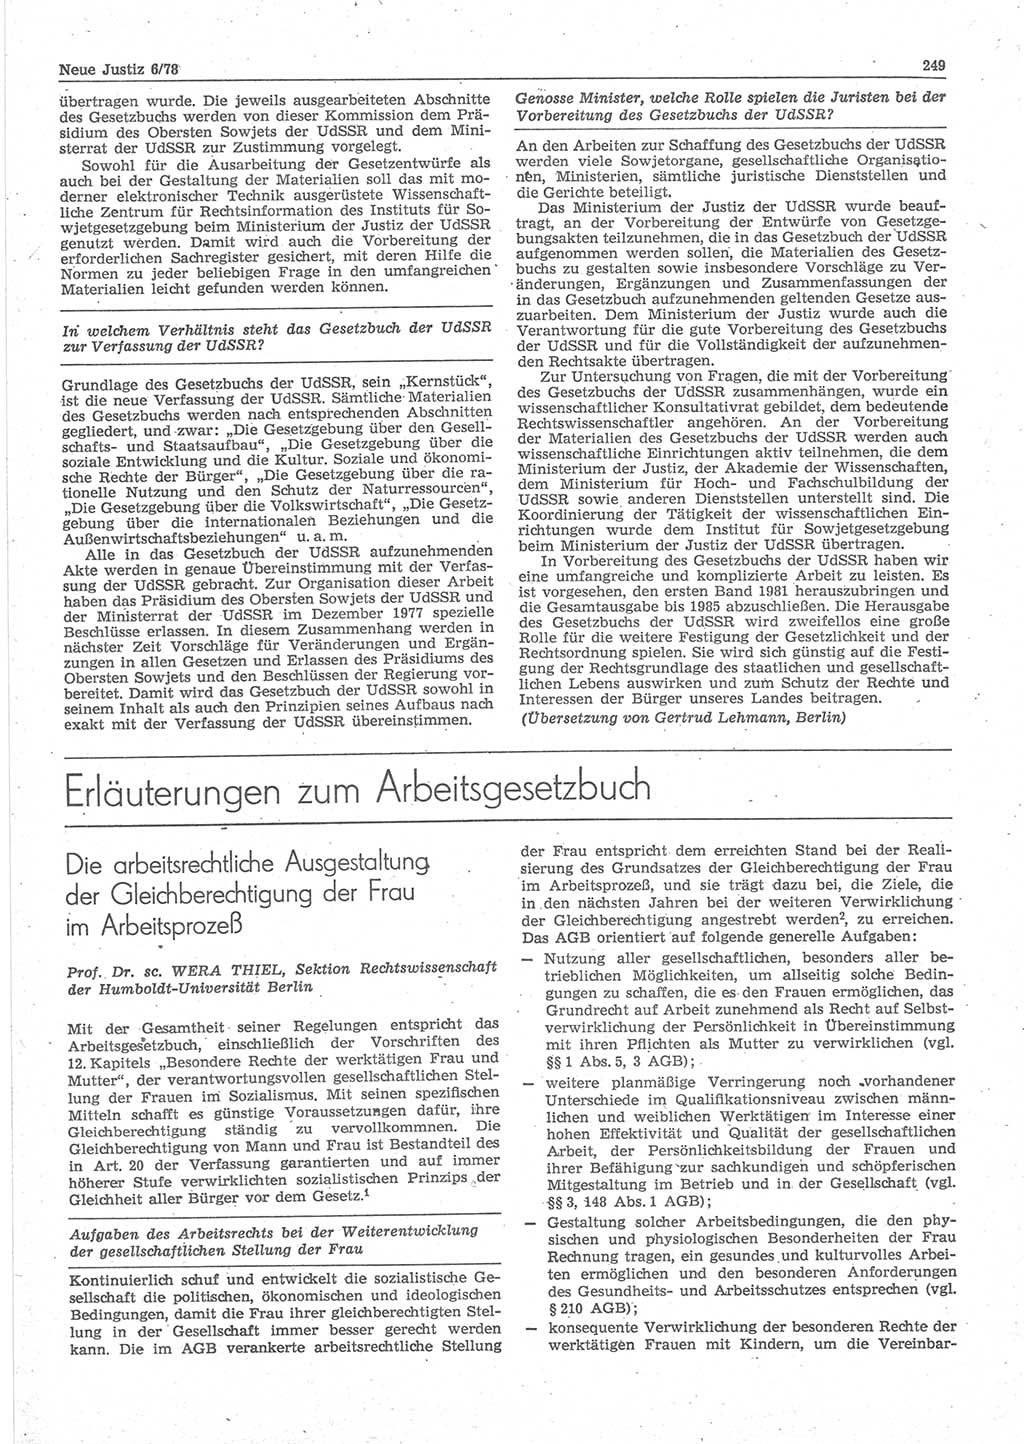 Neue Justiz (NJ), Zeitschrift für sozialistisches Recht und Gesetzlichkeit [Deutsche Demokratische Republik (DDR)], 32. Jahrgang 1978, Seite 249 (NJ DDR 1978, S. 249)